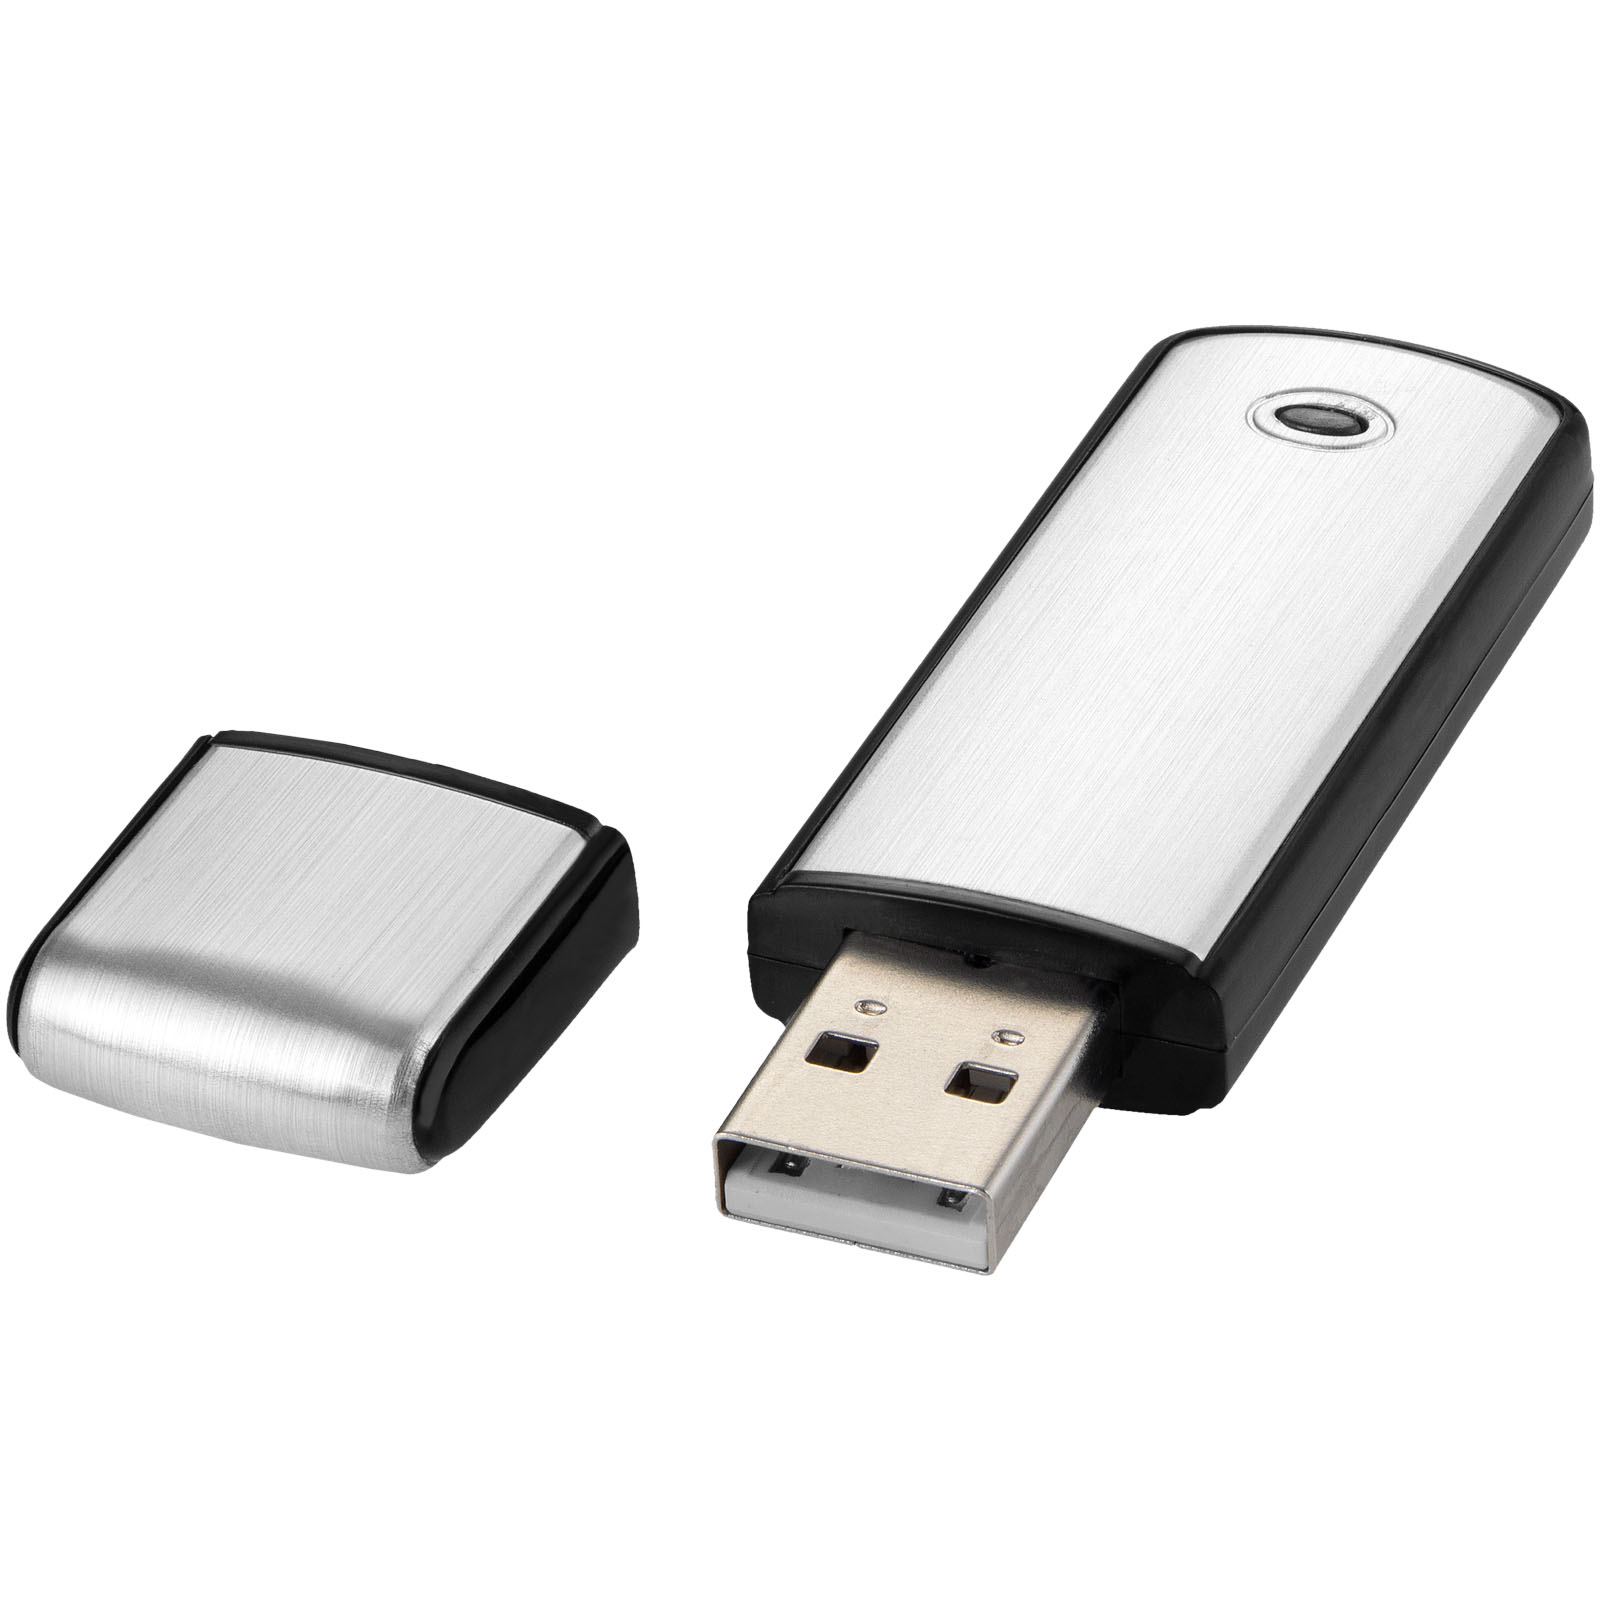 Memoria USB Cuadrada - Ambleside - Mesía